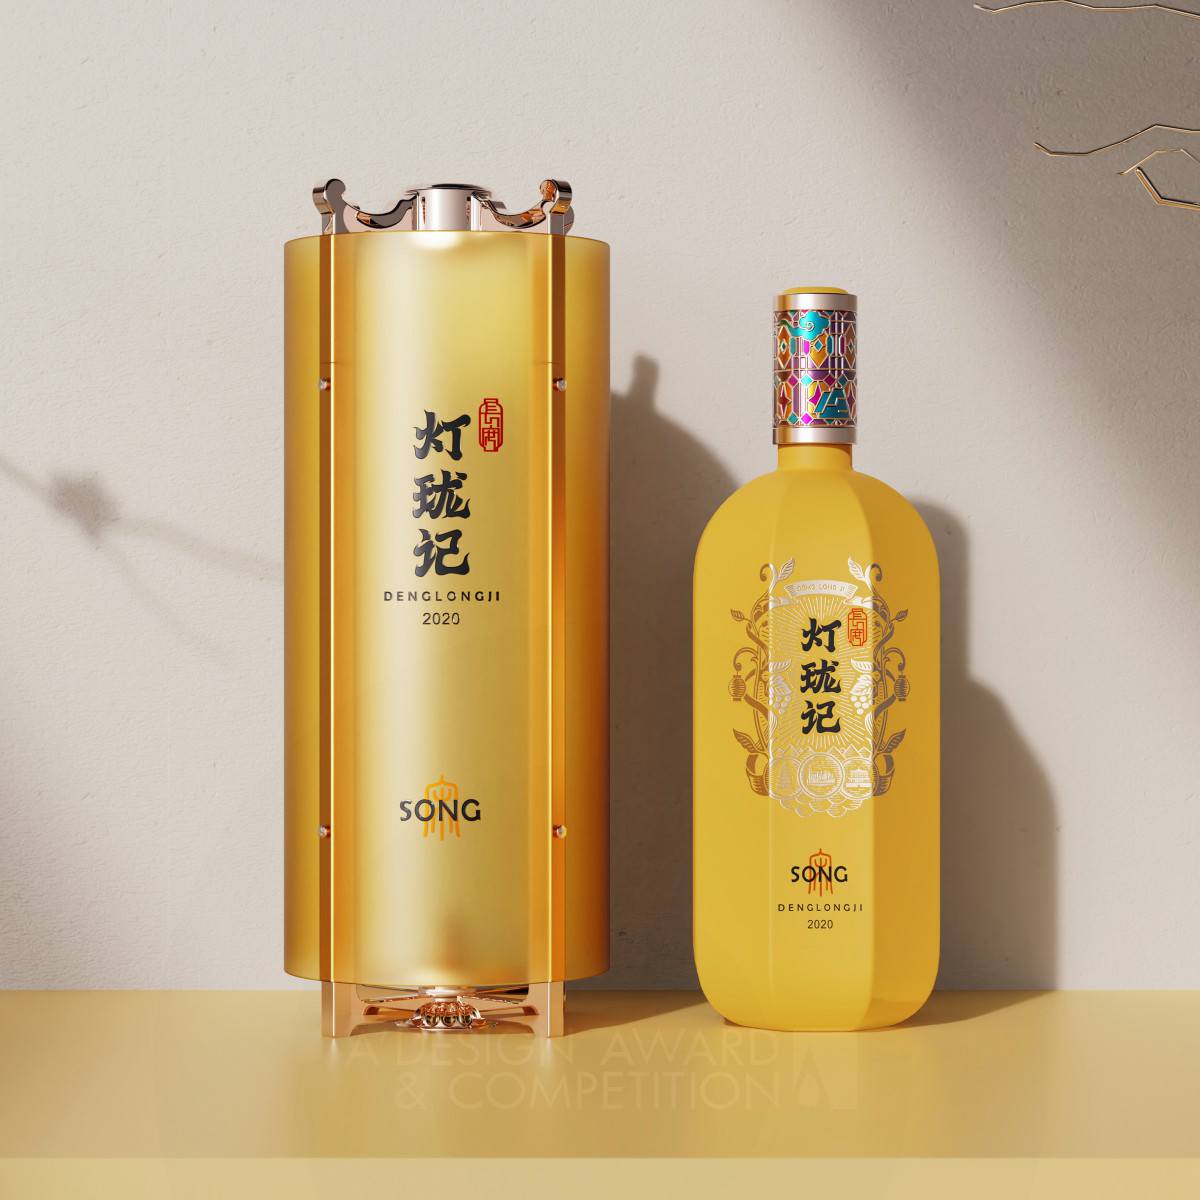 Deng Long Ji Alcoholic Beverage Packaging by Wen Liu